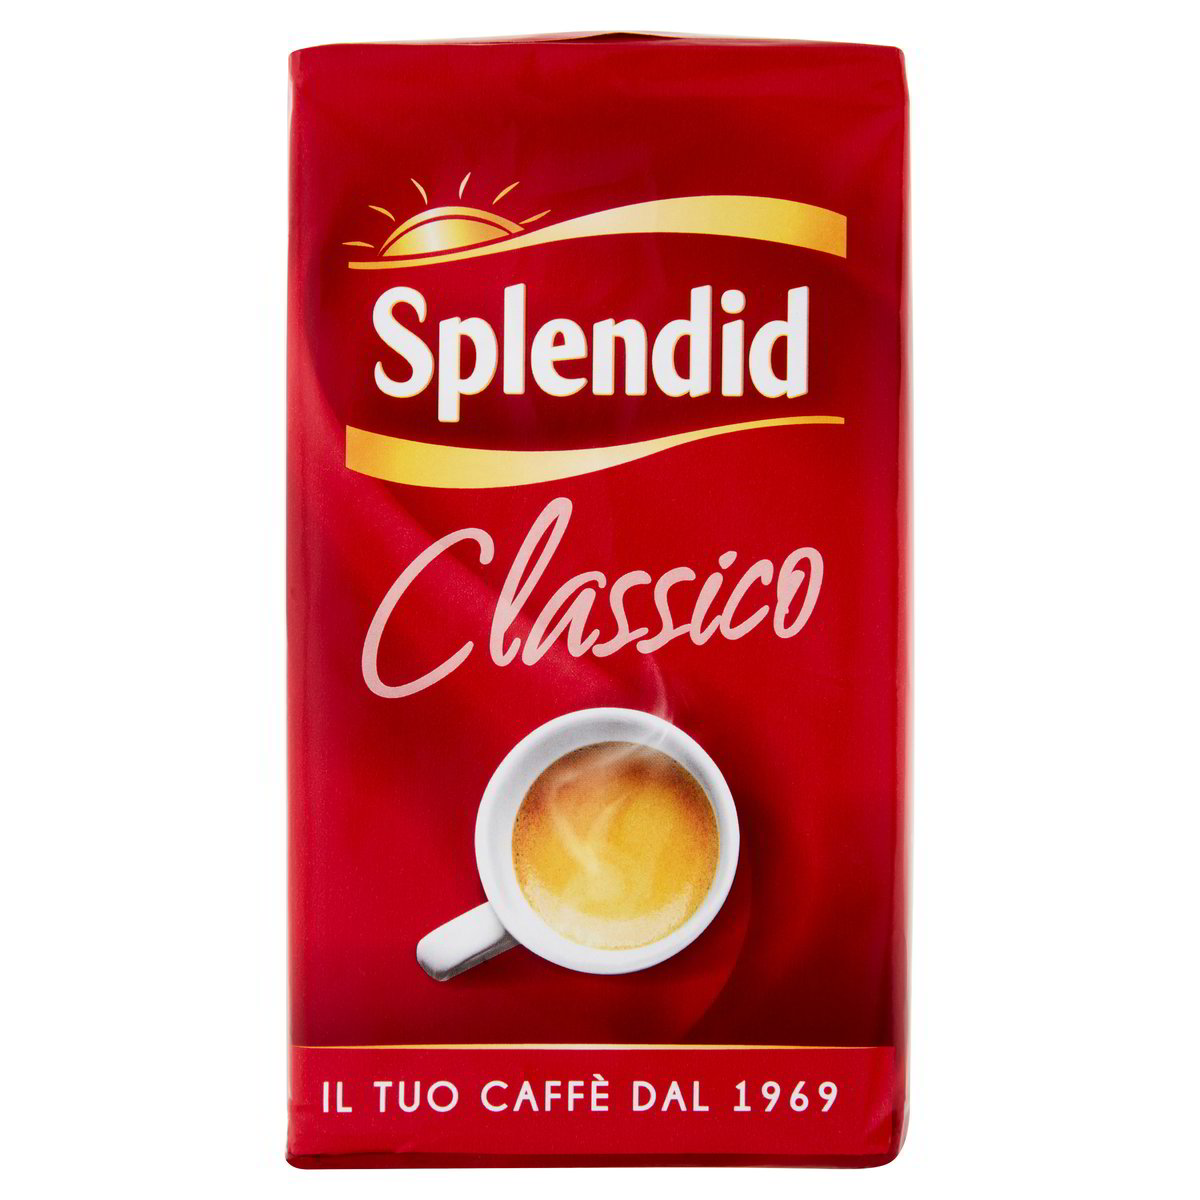 Splendid Caffè classico